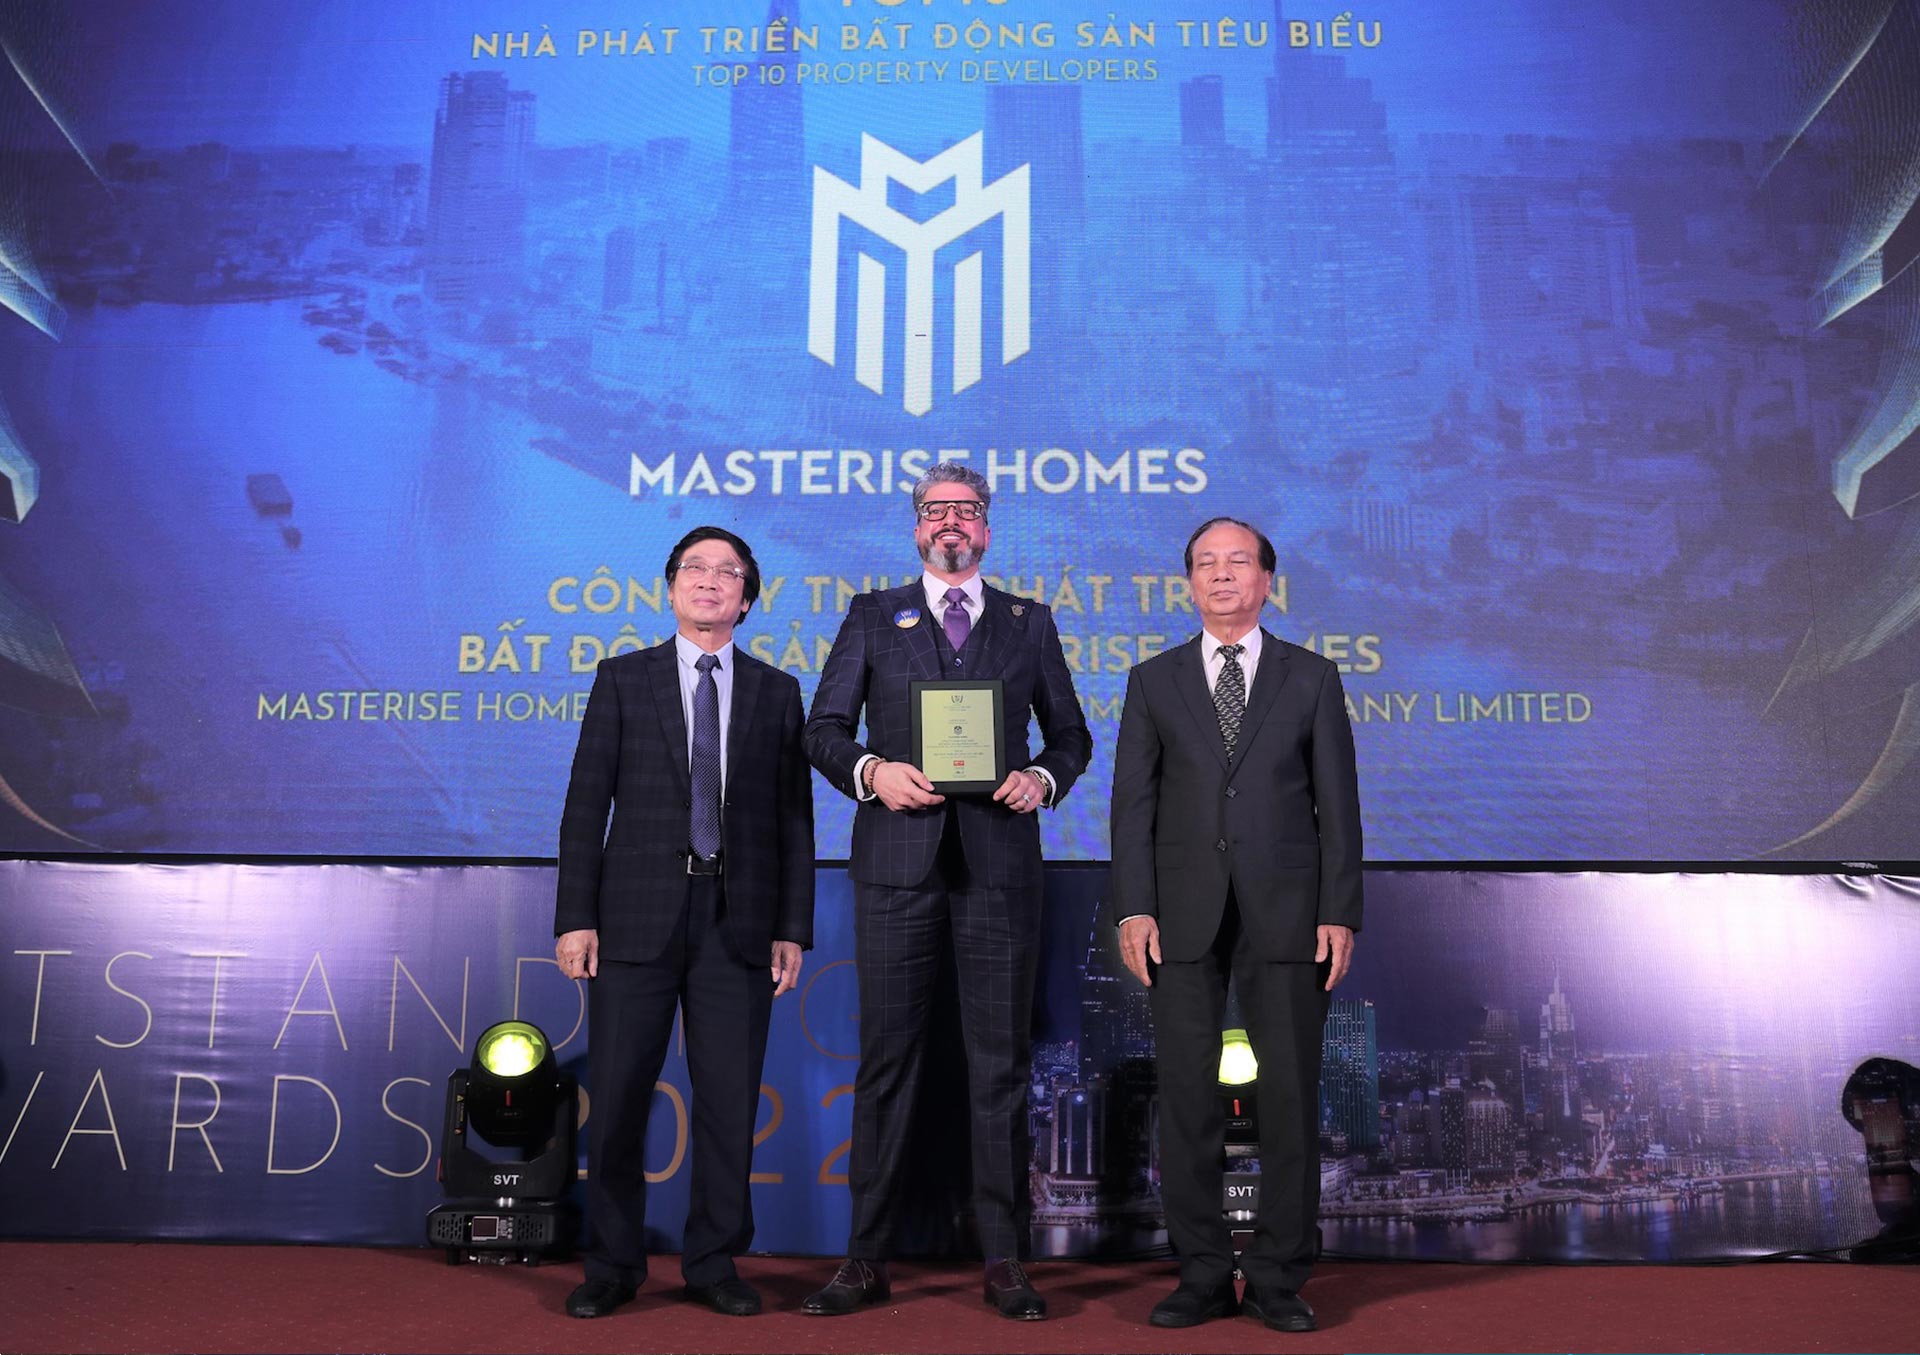 The Global City đối tác phát triển Masterise Homes